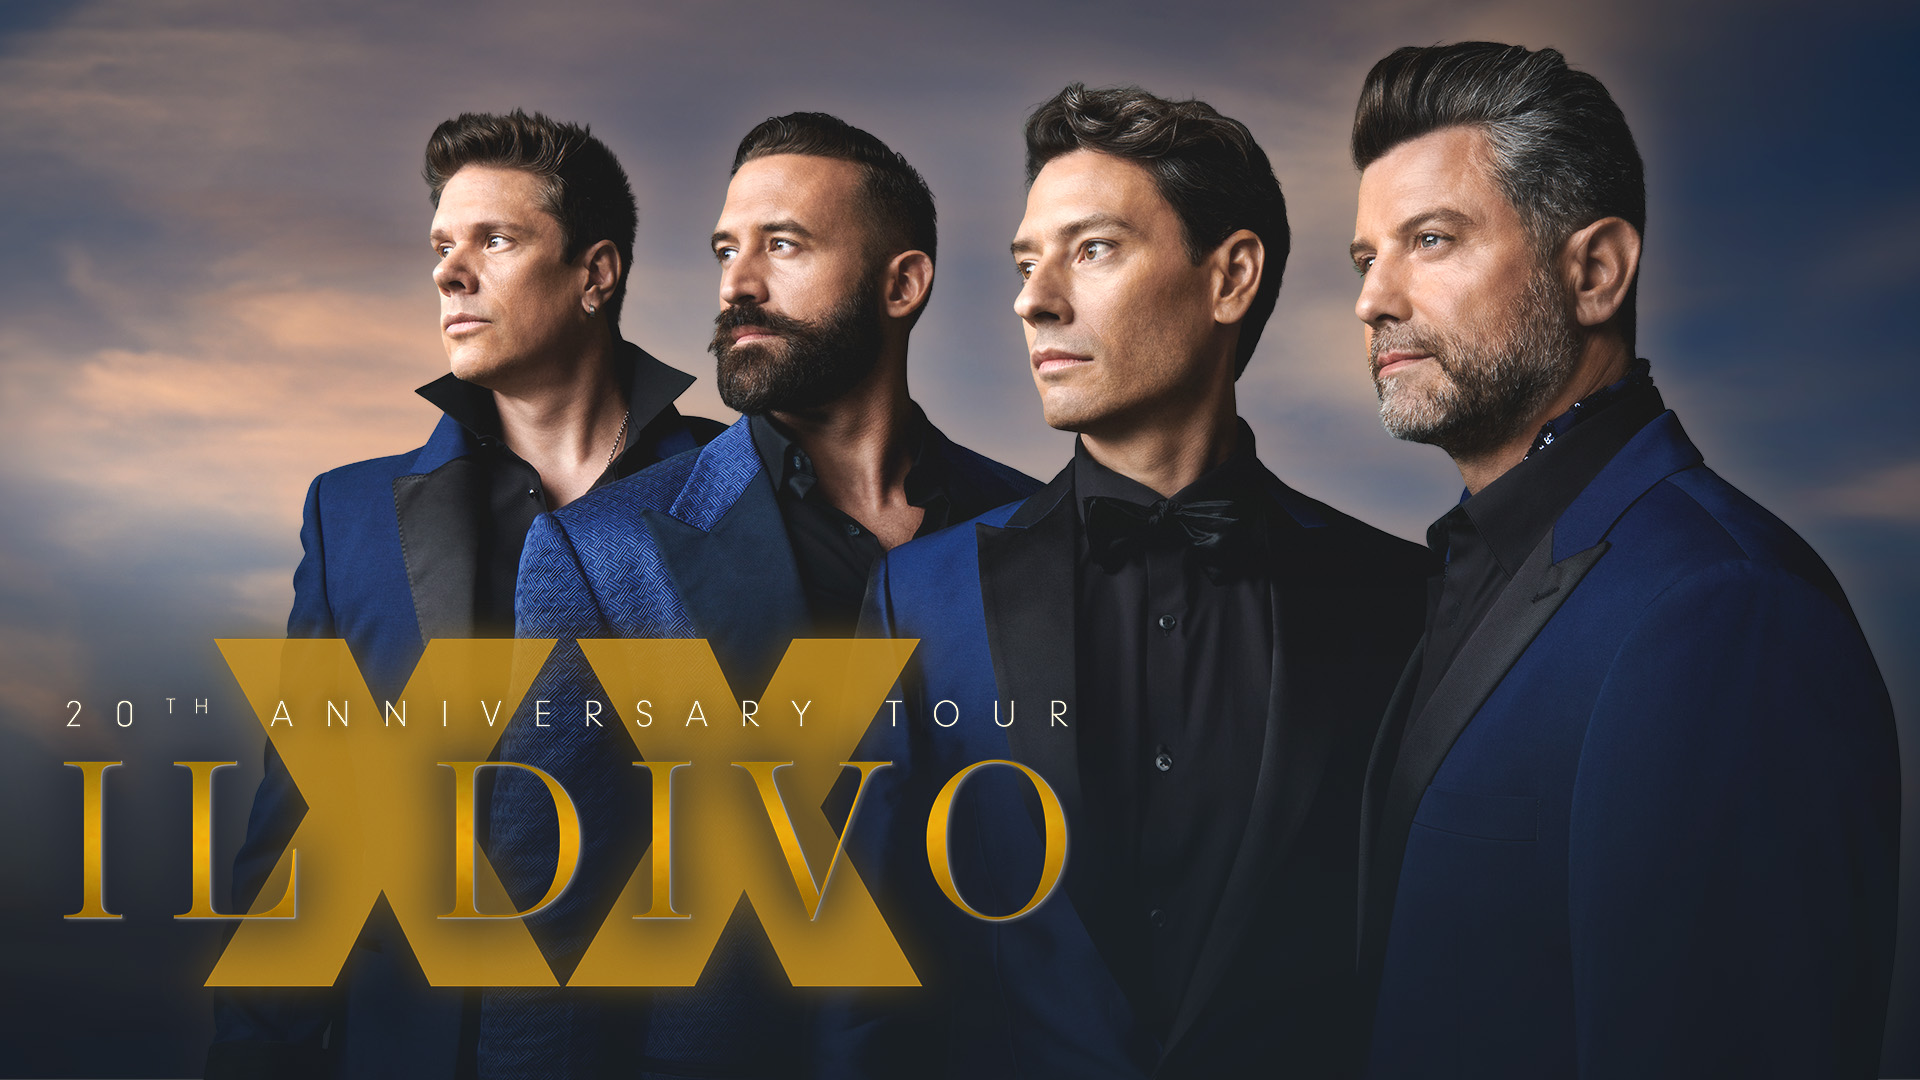 Il Divo - XX: 20th Anniversary Tour